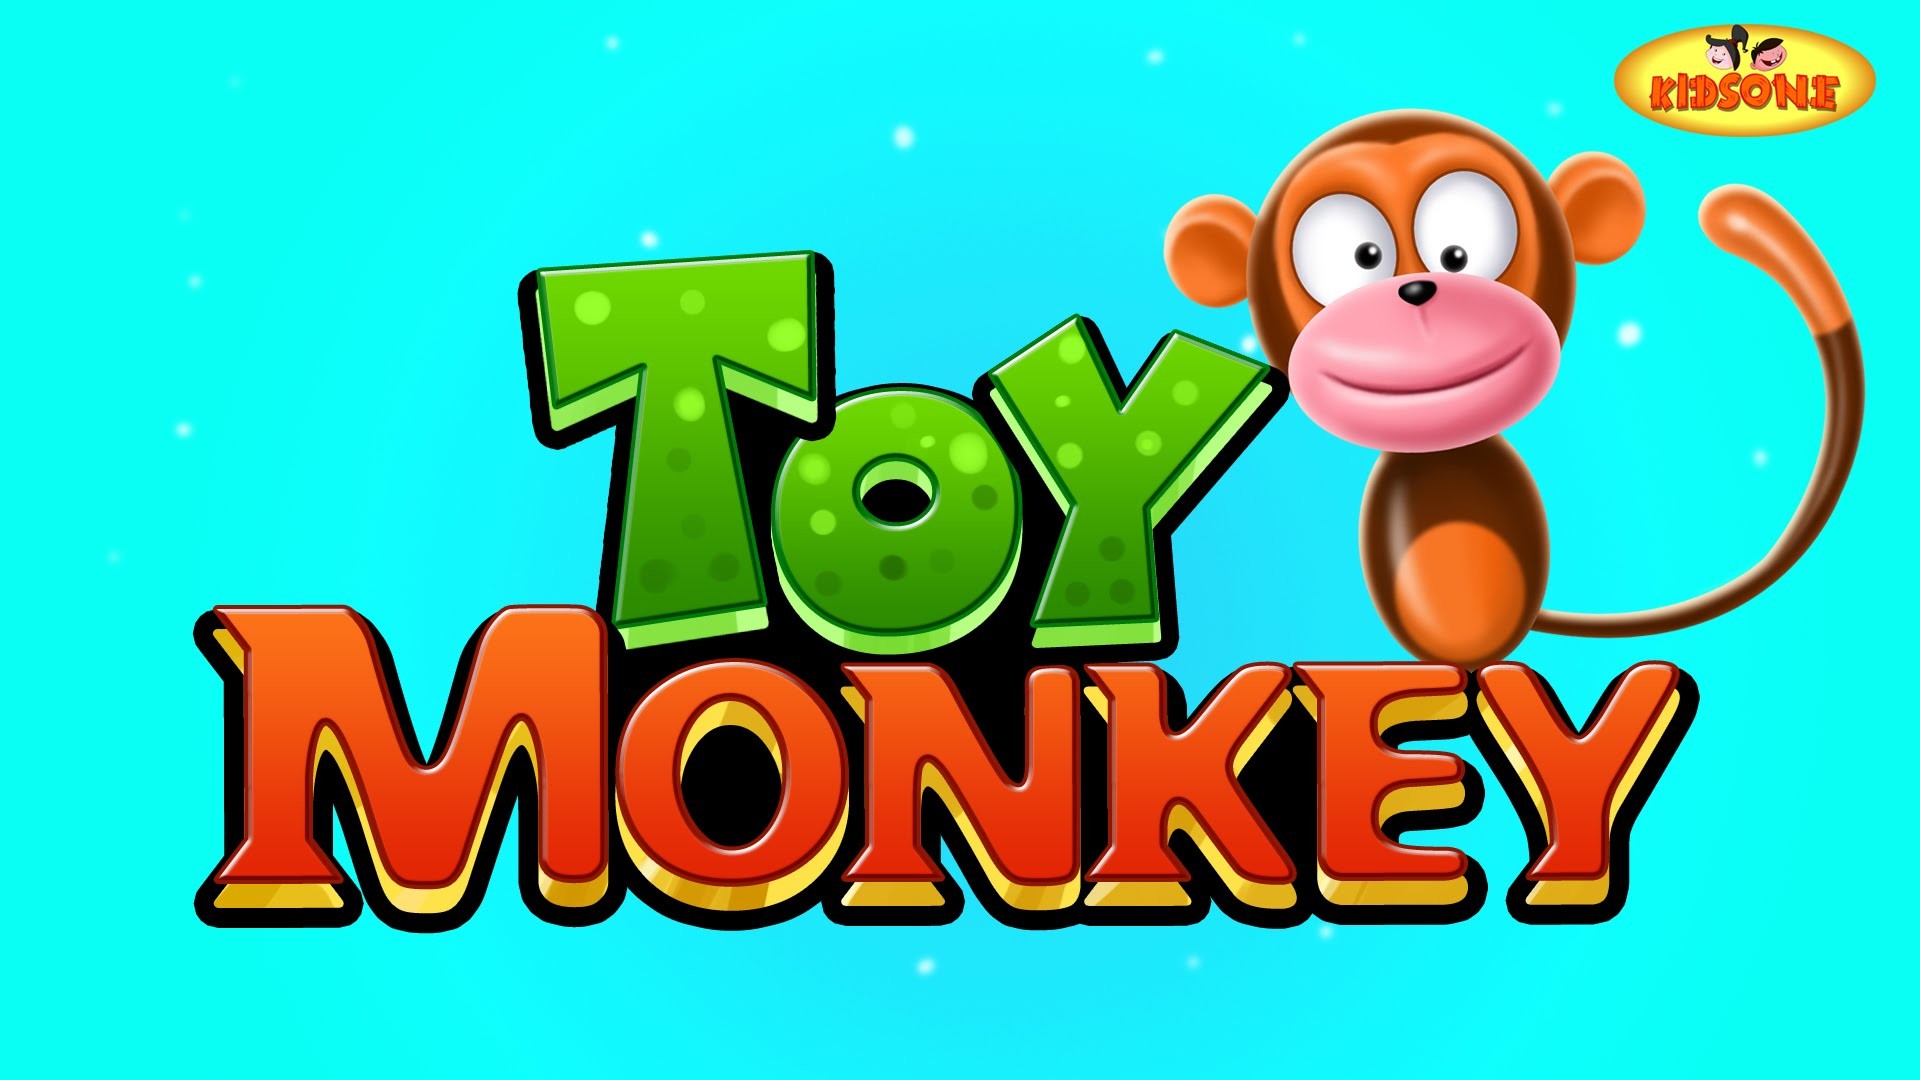 1920x1080 Toy Monkey I Funny Monkey Animation for Children - KidsOne